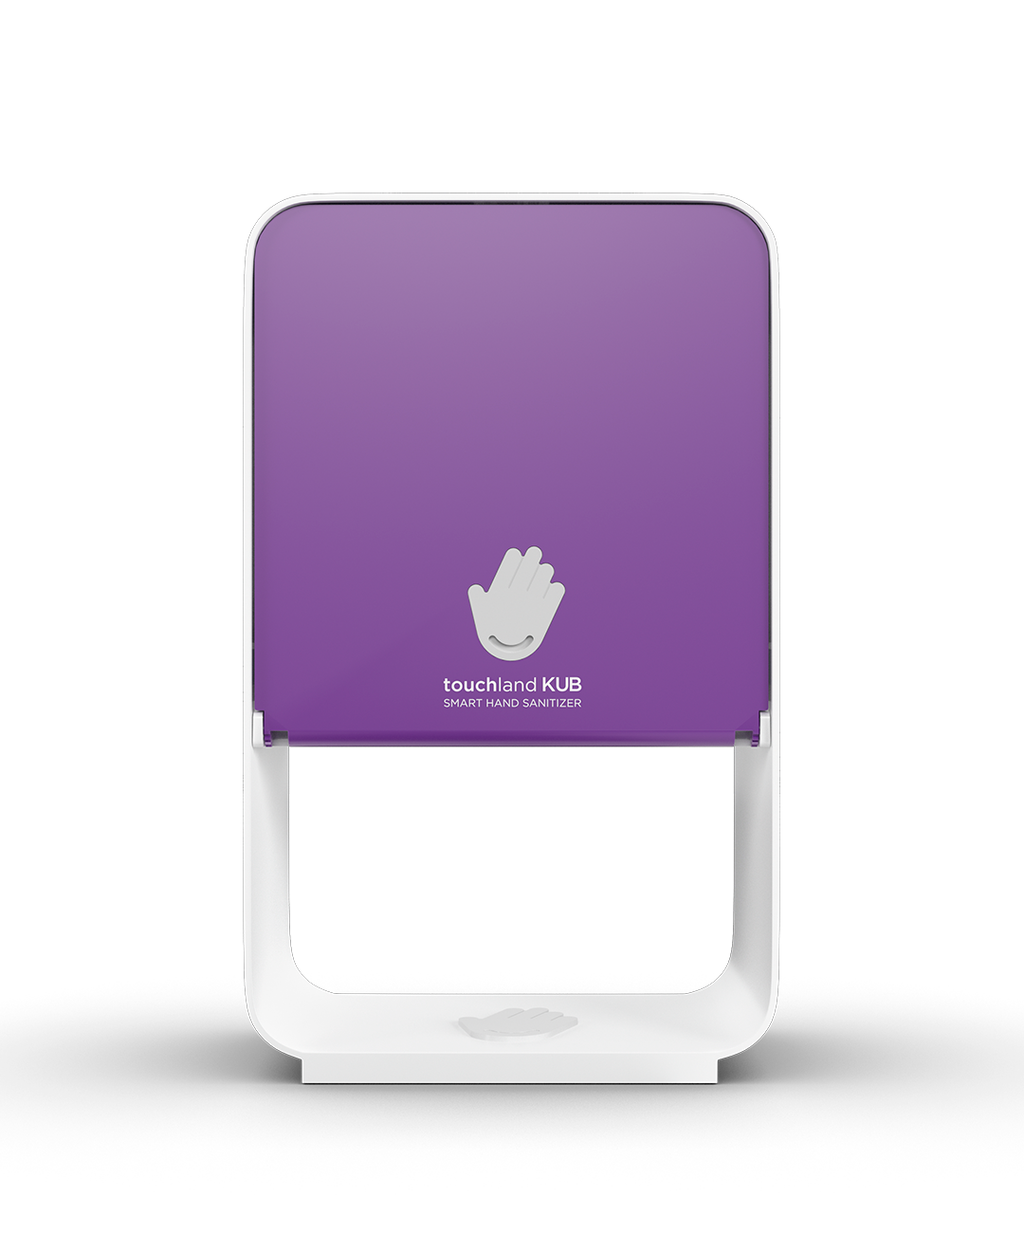 Kub dispenser in velvet purple on white background